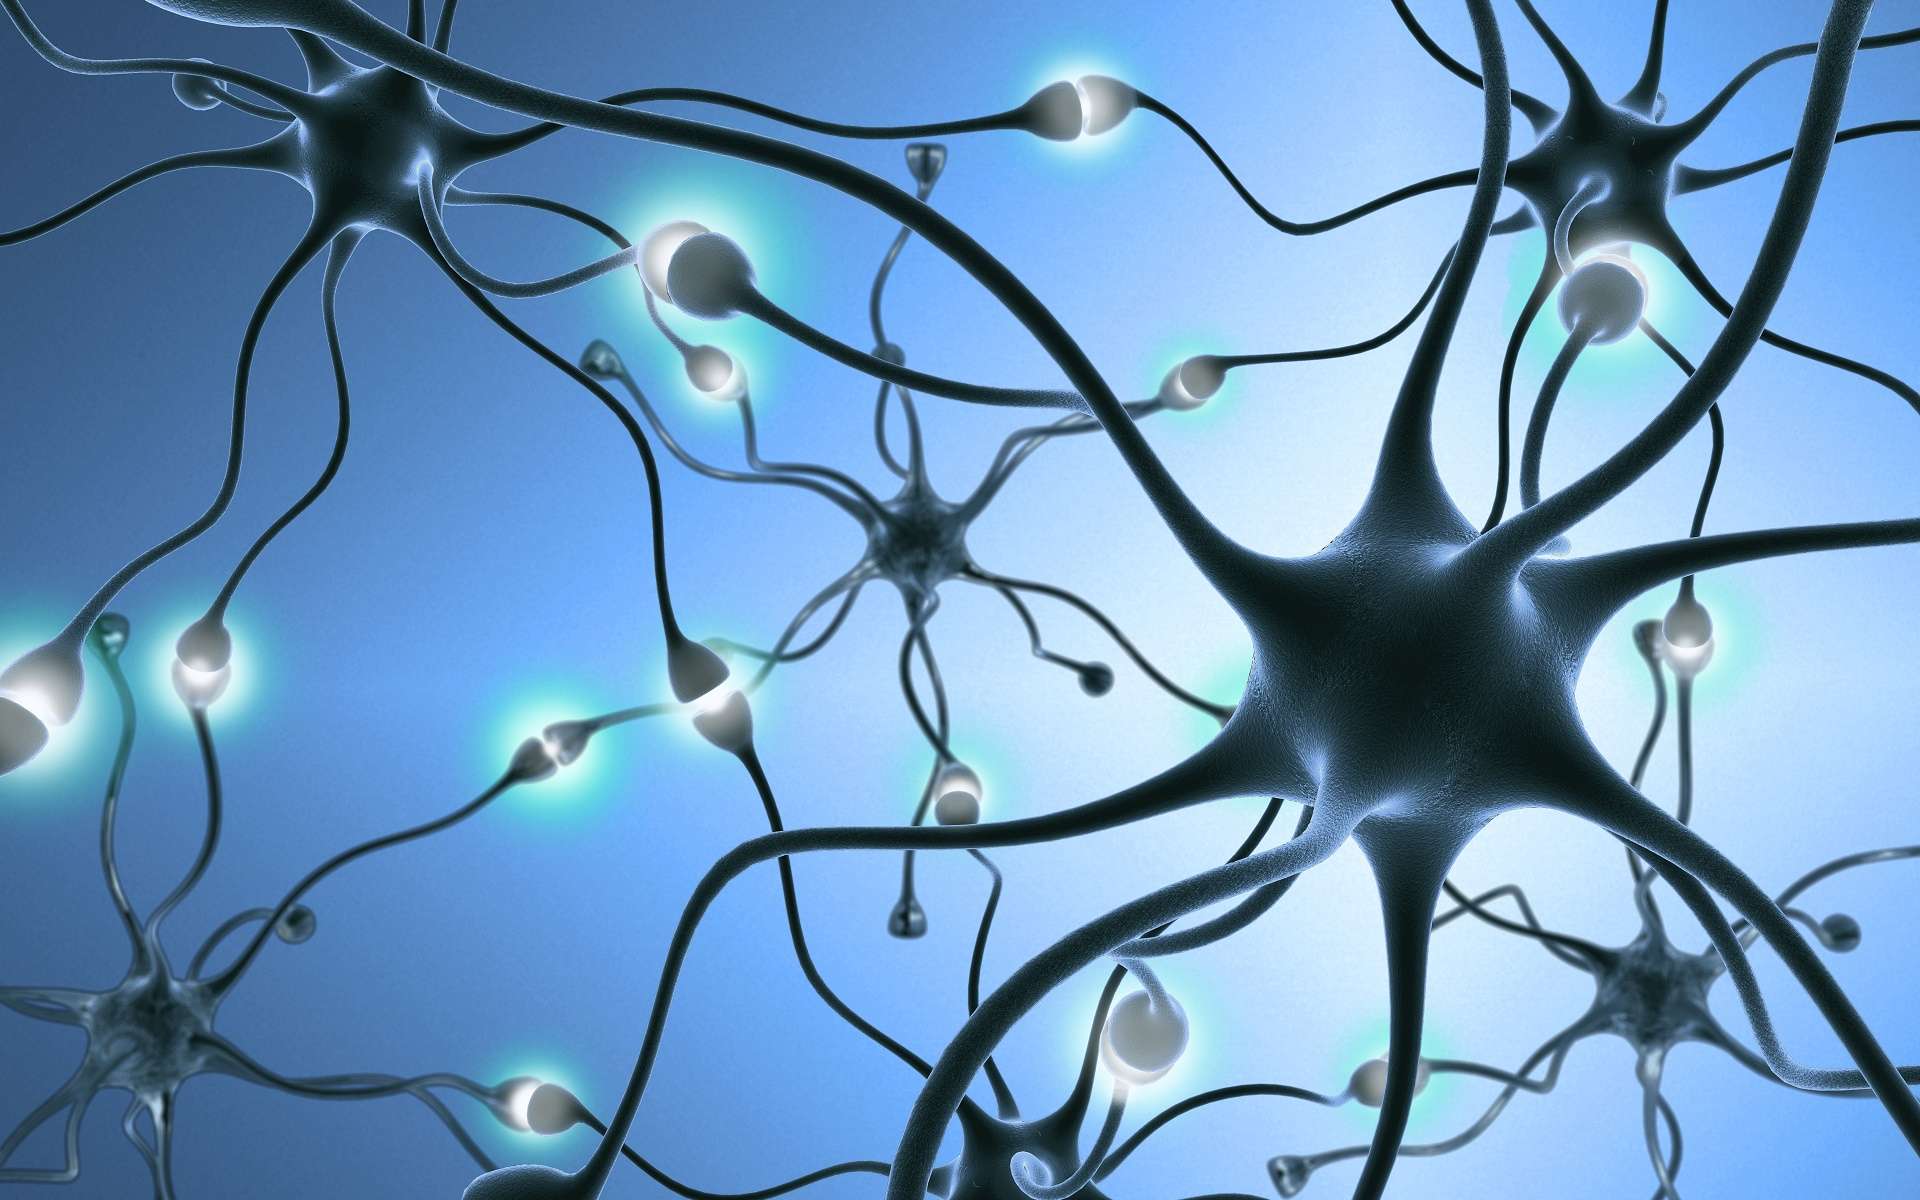 Lors des apprentissages, des connexions entre neurones (synapses) sont renforcées. © StudioSmart, Shutterstock